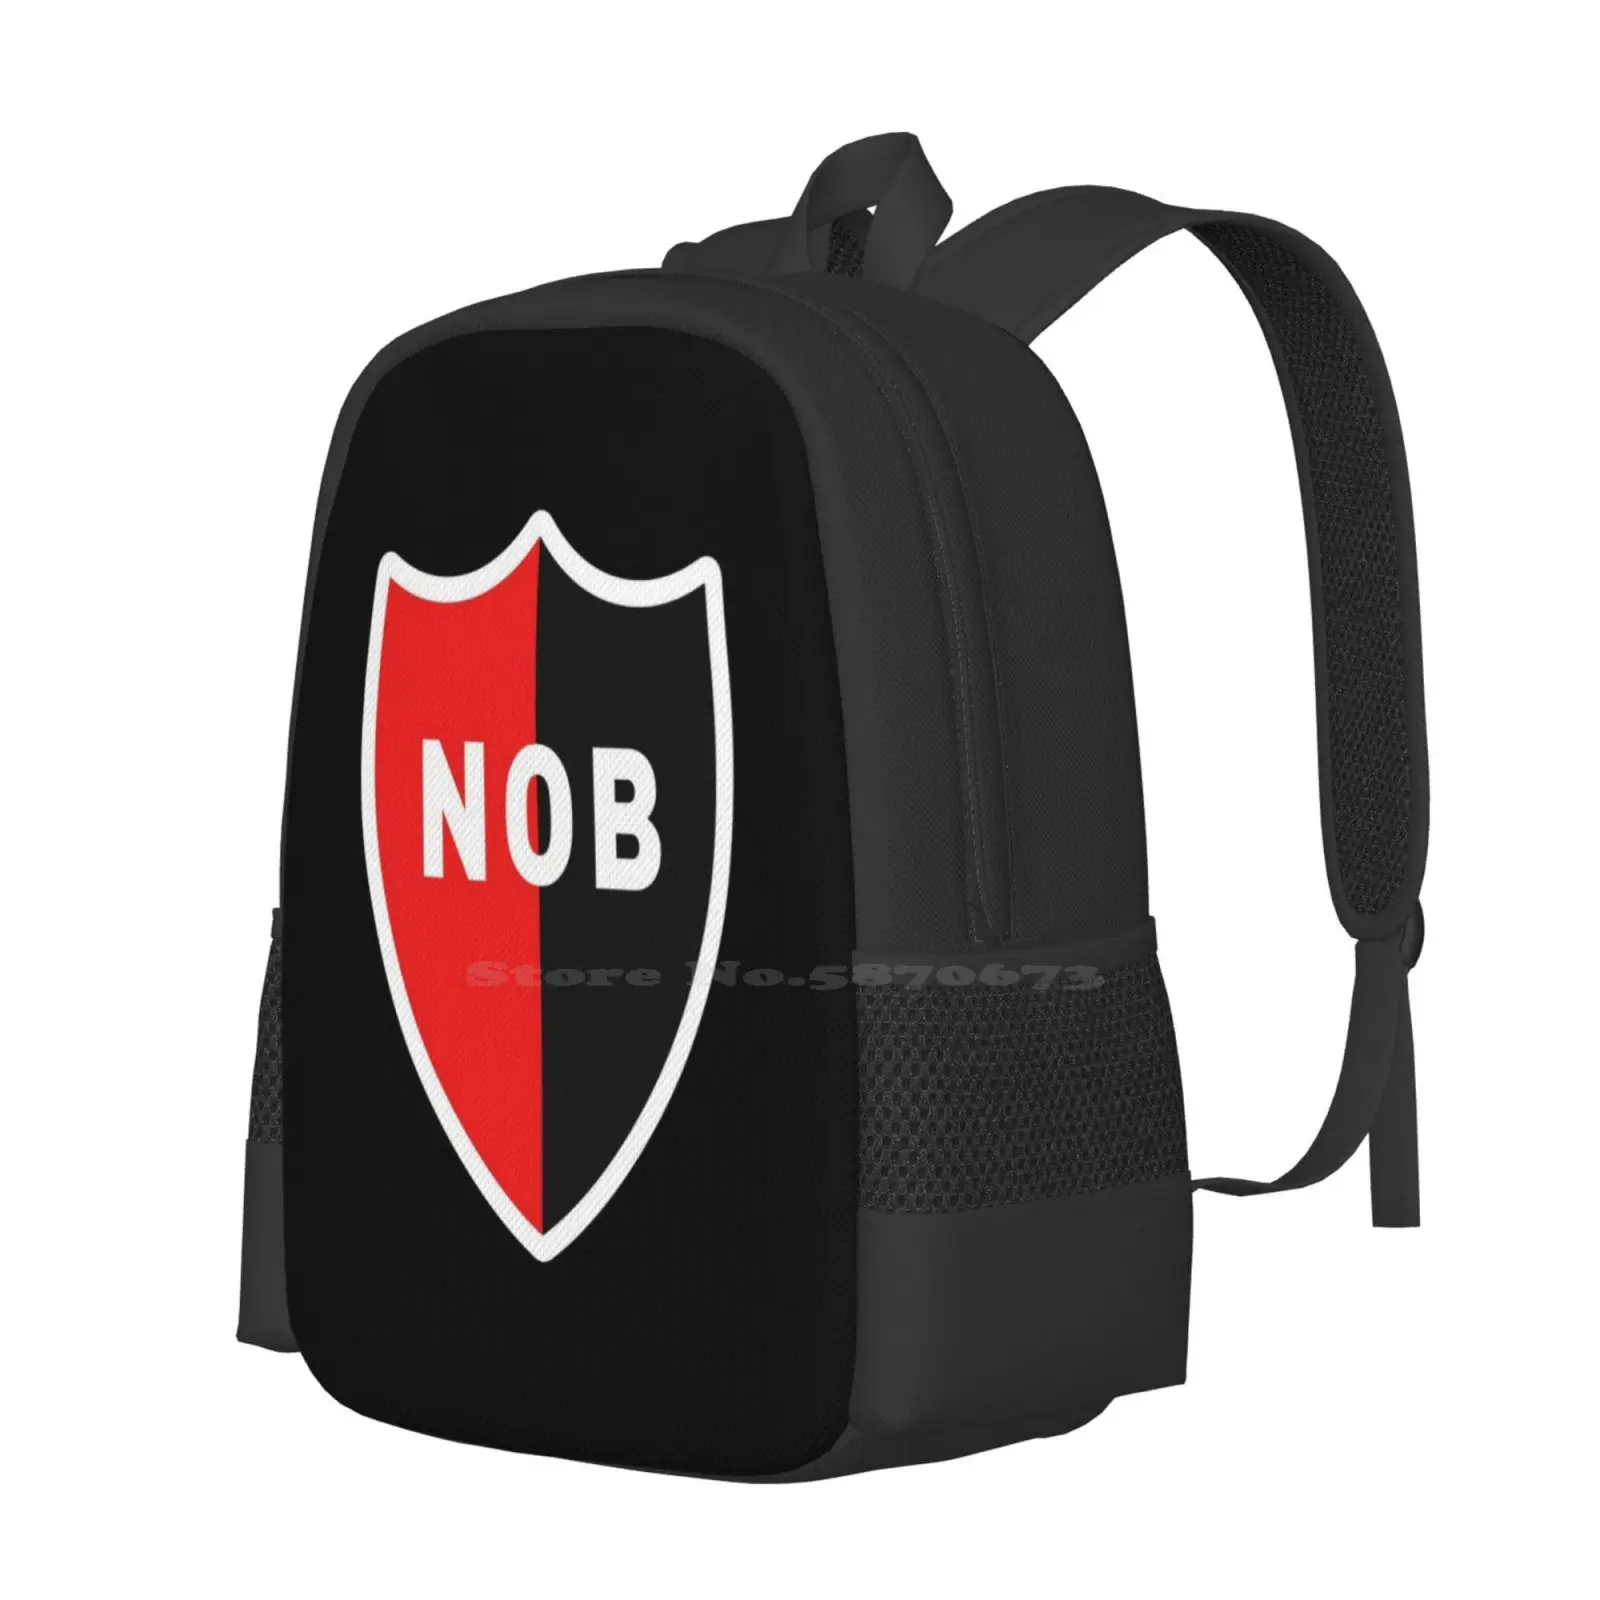 Newell Padrão de Moda Design de Viagem Portátil Escola de Mochila Saco Newells Old Boys Estádio Marcelo Bielsa Nob Logotipo Escudo Escudo